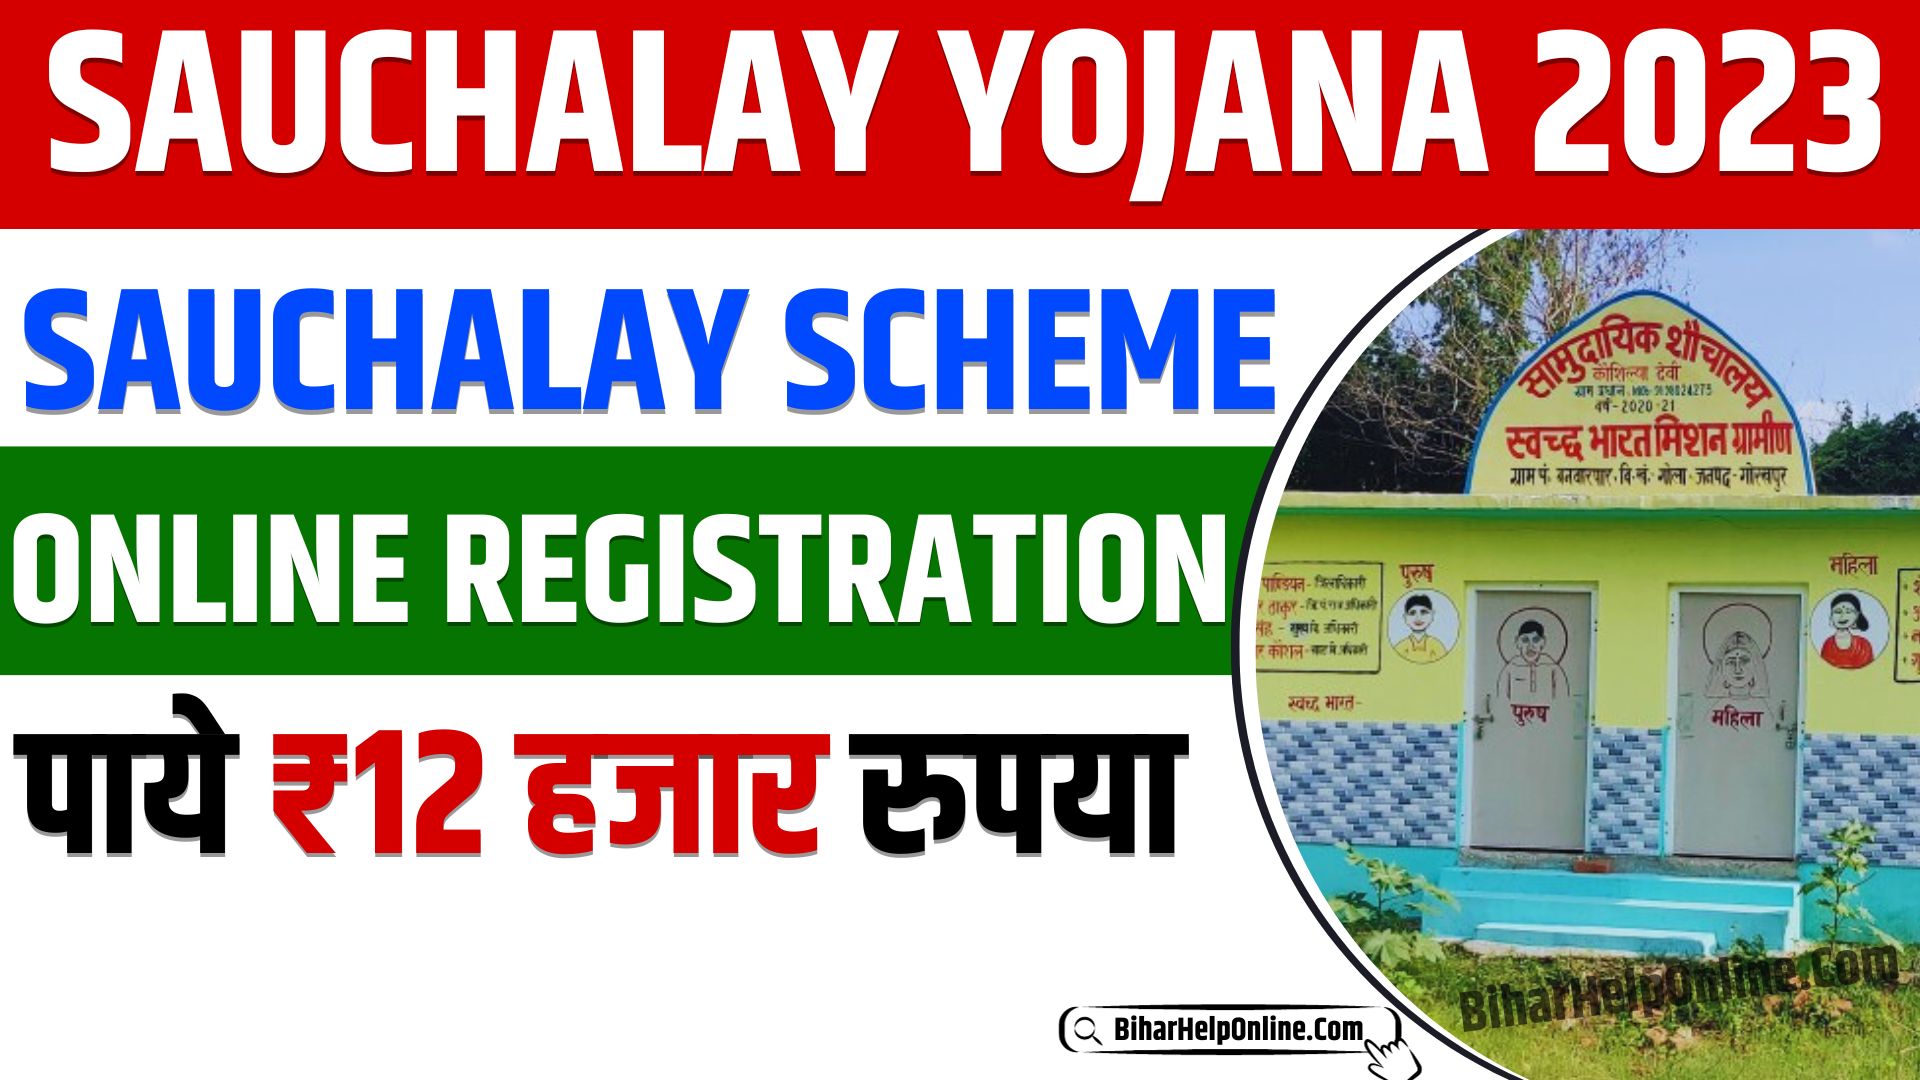 Sauchalay Scheme Online Registration 2023